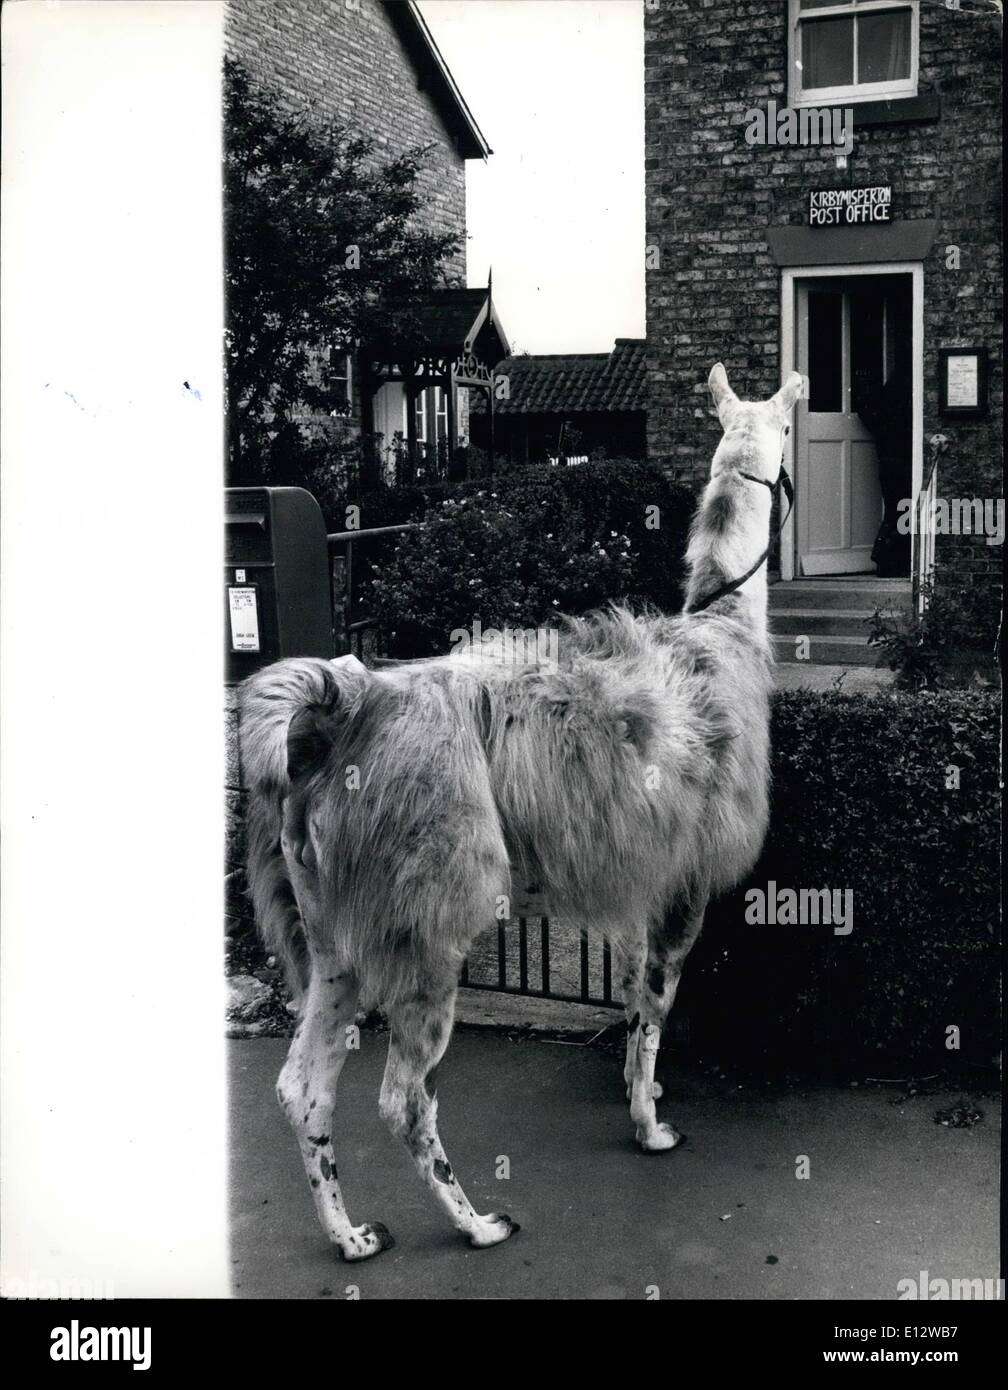 Le 26 février 2012 - Julie le millage -par lama. Trottine sur la voies de Melton, Yorkshire sur sa monture, 15 ans Julie Cook s'accompagne généralement de bien remuer pendant qu'elle est montée, pas sur un cheval, mais sur un lama ! Le père de Julie a acheté la liberté , le lama pour 50 à partir de la proximité de Flamingo Park Zoo comme animal de compagnie - et lui a promis à Julie si elle pourrait se briser en lui Banque D'Images